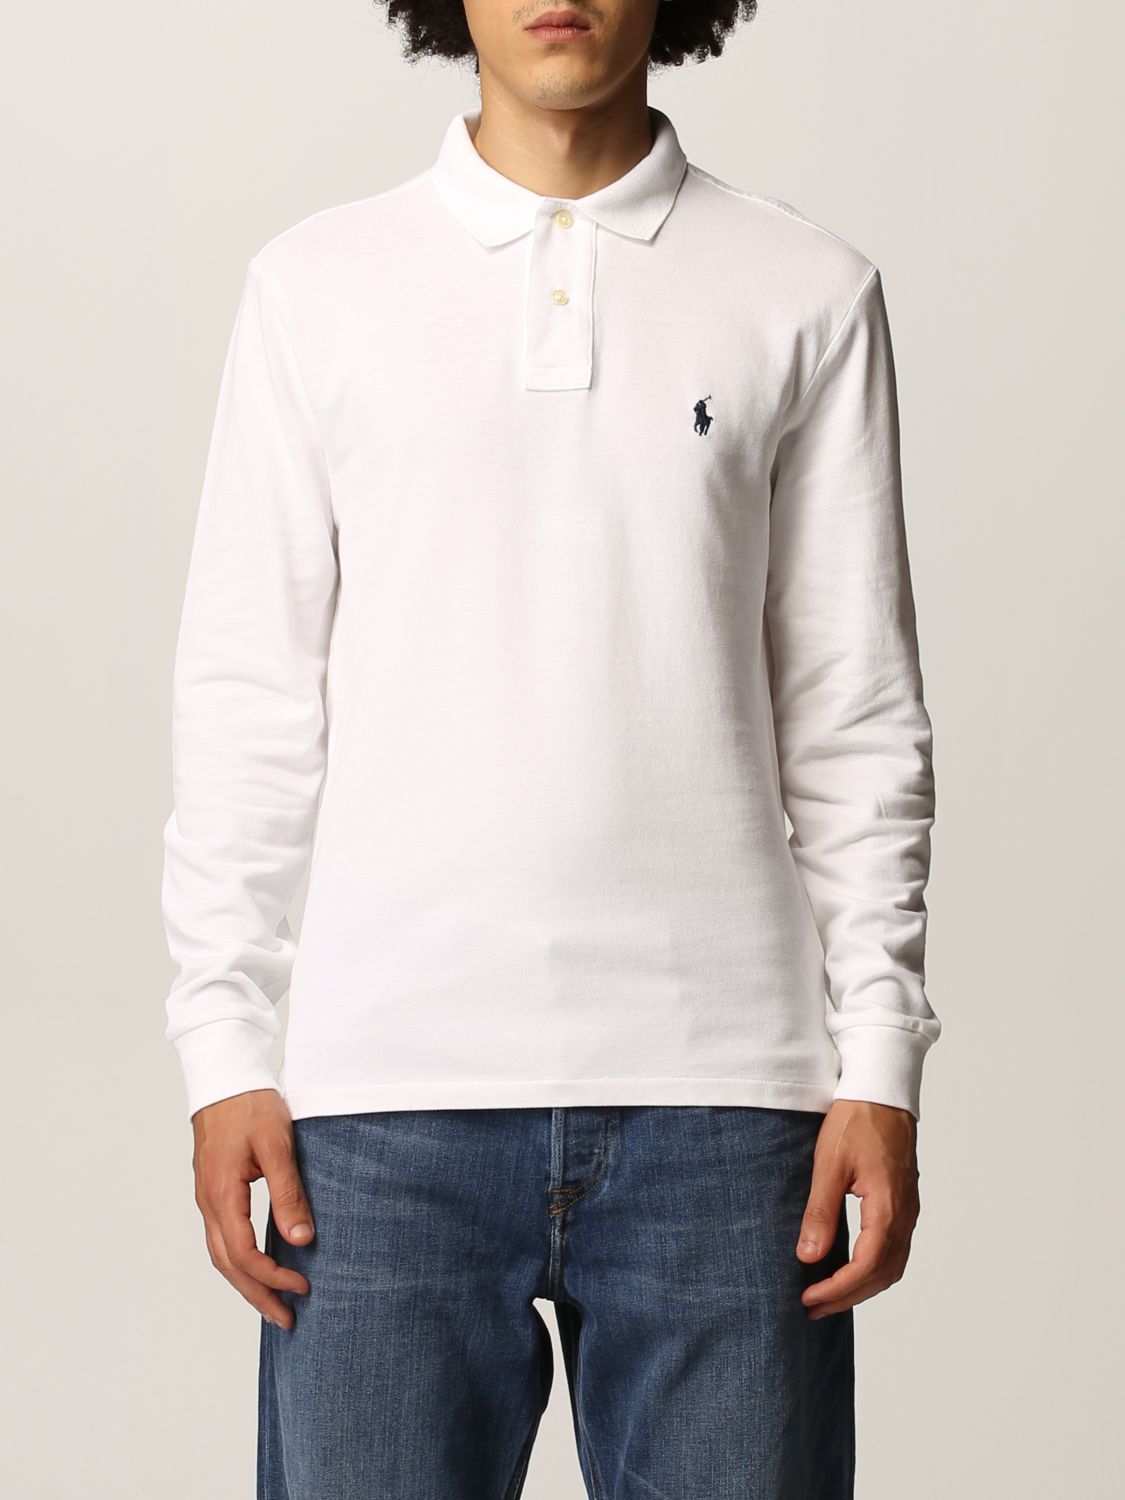 POLO RALPH LAUREN: polo shirt in pique cotton - White | Polo Ralph Lauren  polo shirt 710681126 online on 